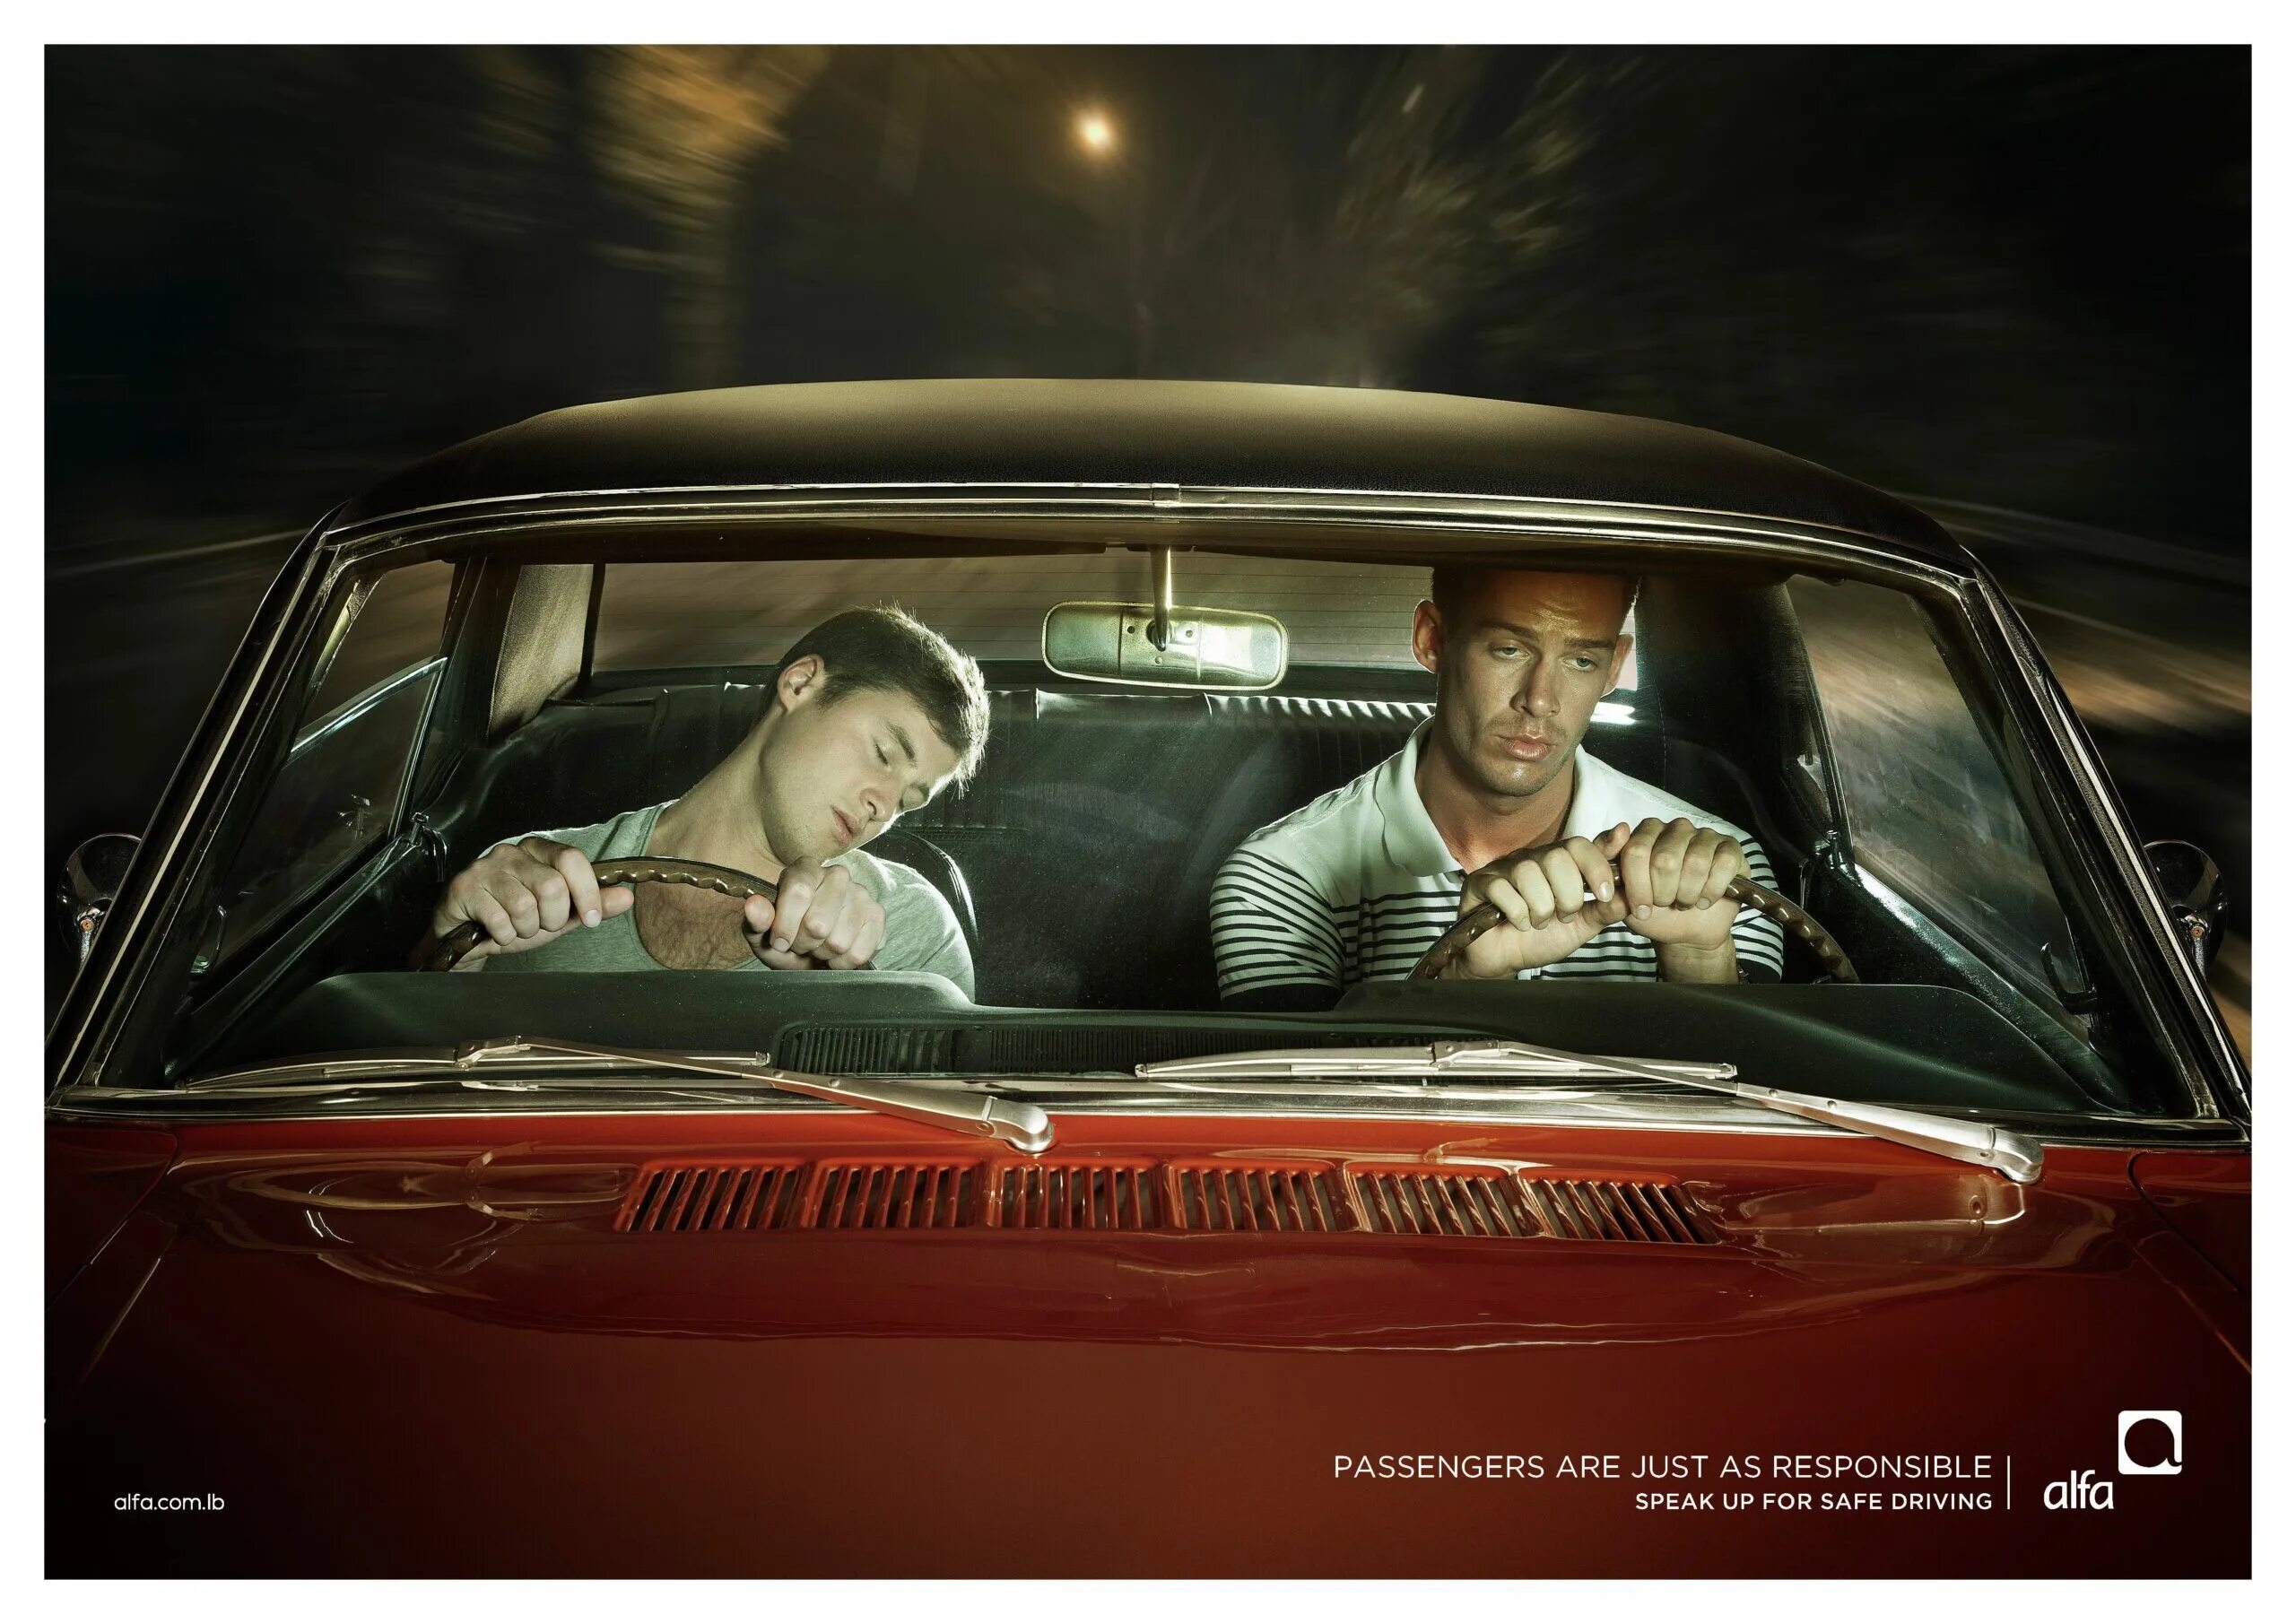 Safe автомобиль. Современная реклама. Креативная социальная реклама. Социальная реклама вождение. Крутая социальная реклама.